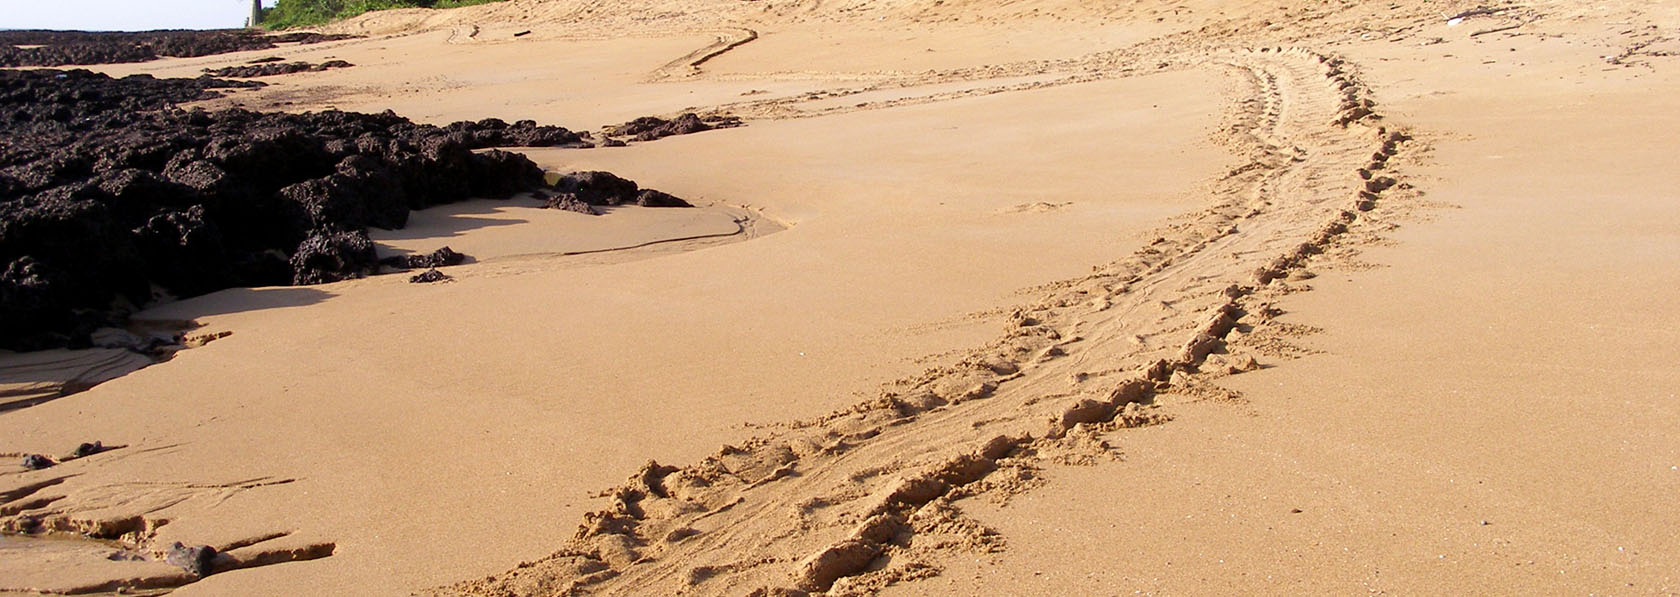 traces de tortue sur l'ilot de poilao reserve naturelle